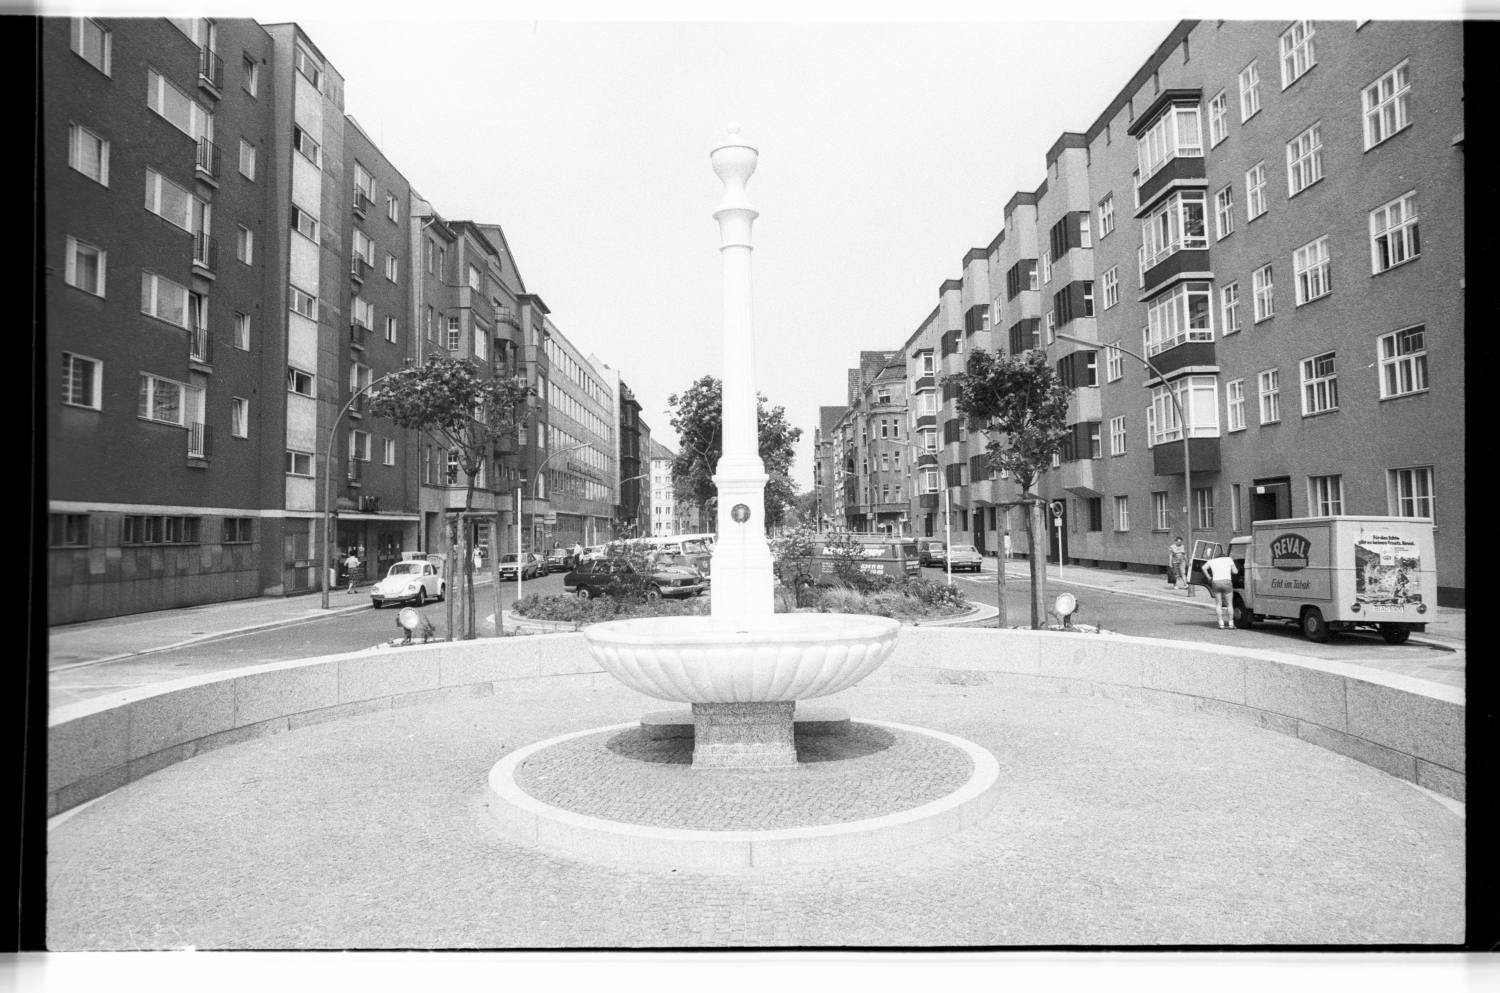 Kleinbildnegative: Marmorbrunnen und Meilenstein, Innsbrucker Platz, 1980 (Museen Tempelhof-Schöneberg/Jürgen Henschel RR-F)